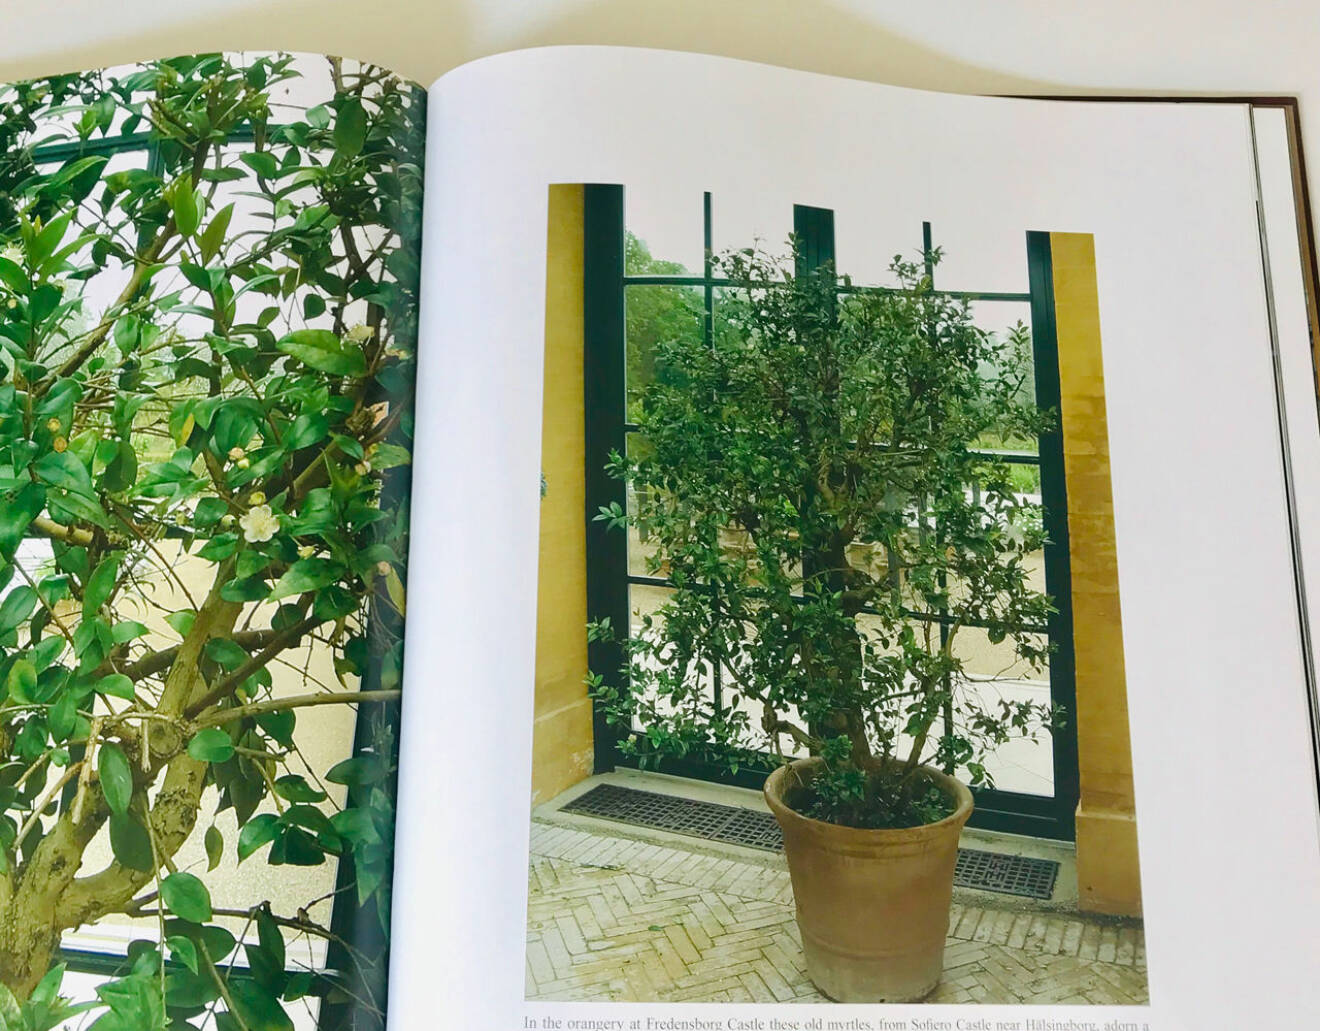 Danska kungafamiljens myrtenbuske står i orangeriet på Fredensborgs slott. Bilden visar boken Royal Flower Glory av Erik Buch (utgiven 2004).